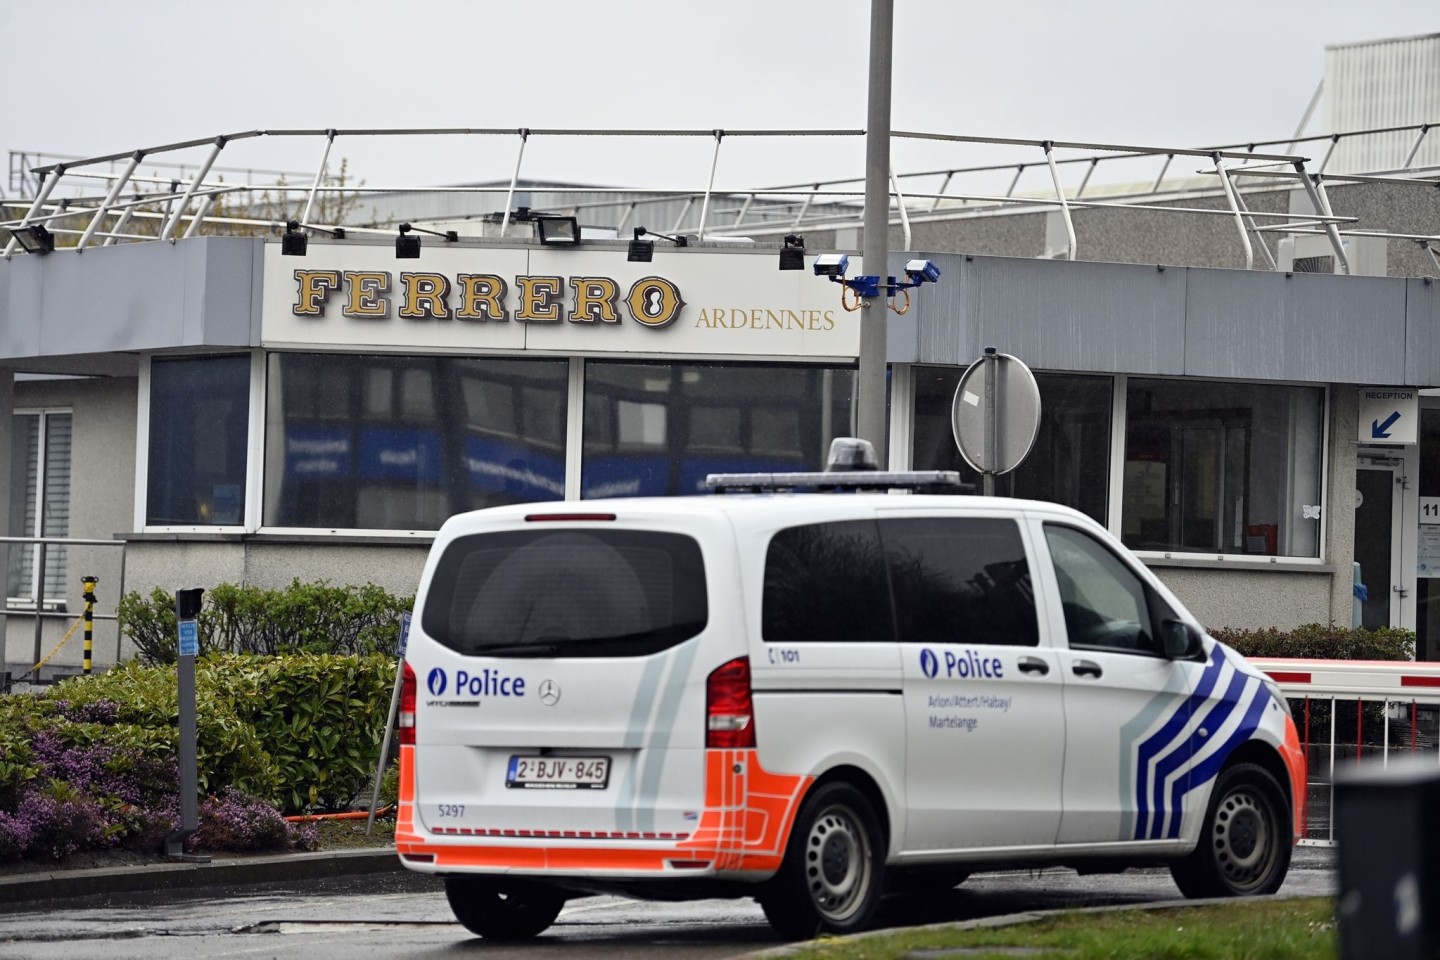 Ein Polizeifahrzeug vor der Ferrero-Fabrik im belgischen Arlon. Dort wird die Produktion vorerst gestoppt.